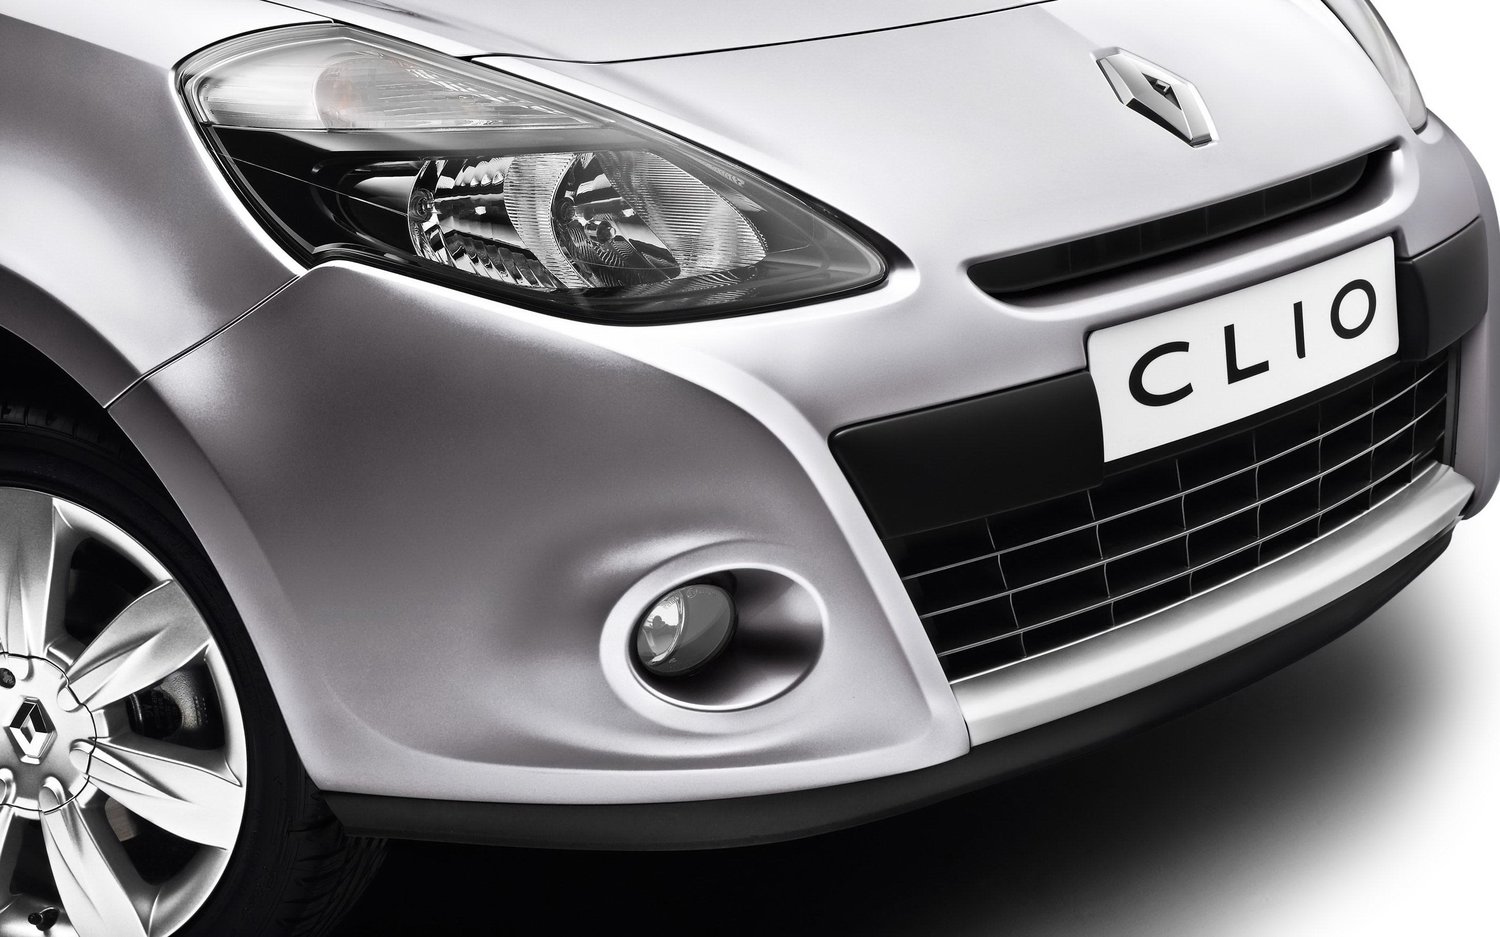 хэтчбек 3 дв. Renault Clio 2009 - 2012г выпуска модификация 1.1 AT (75 л.с.)